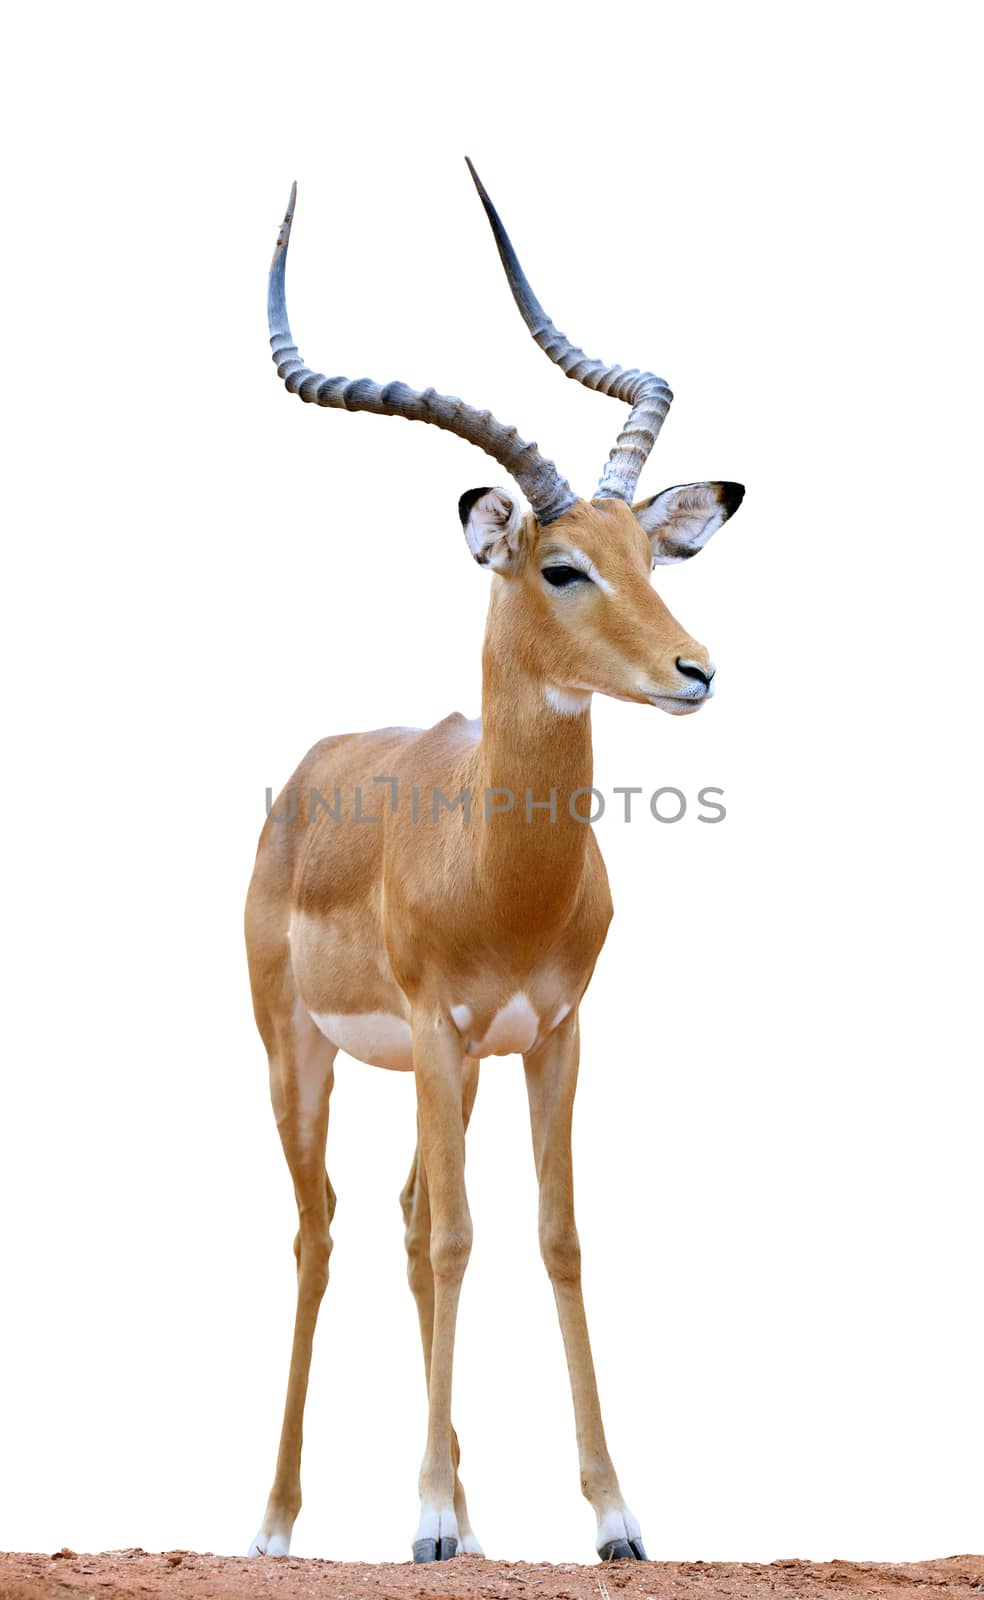 Male impala isolaterd on white background